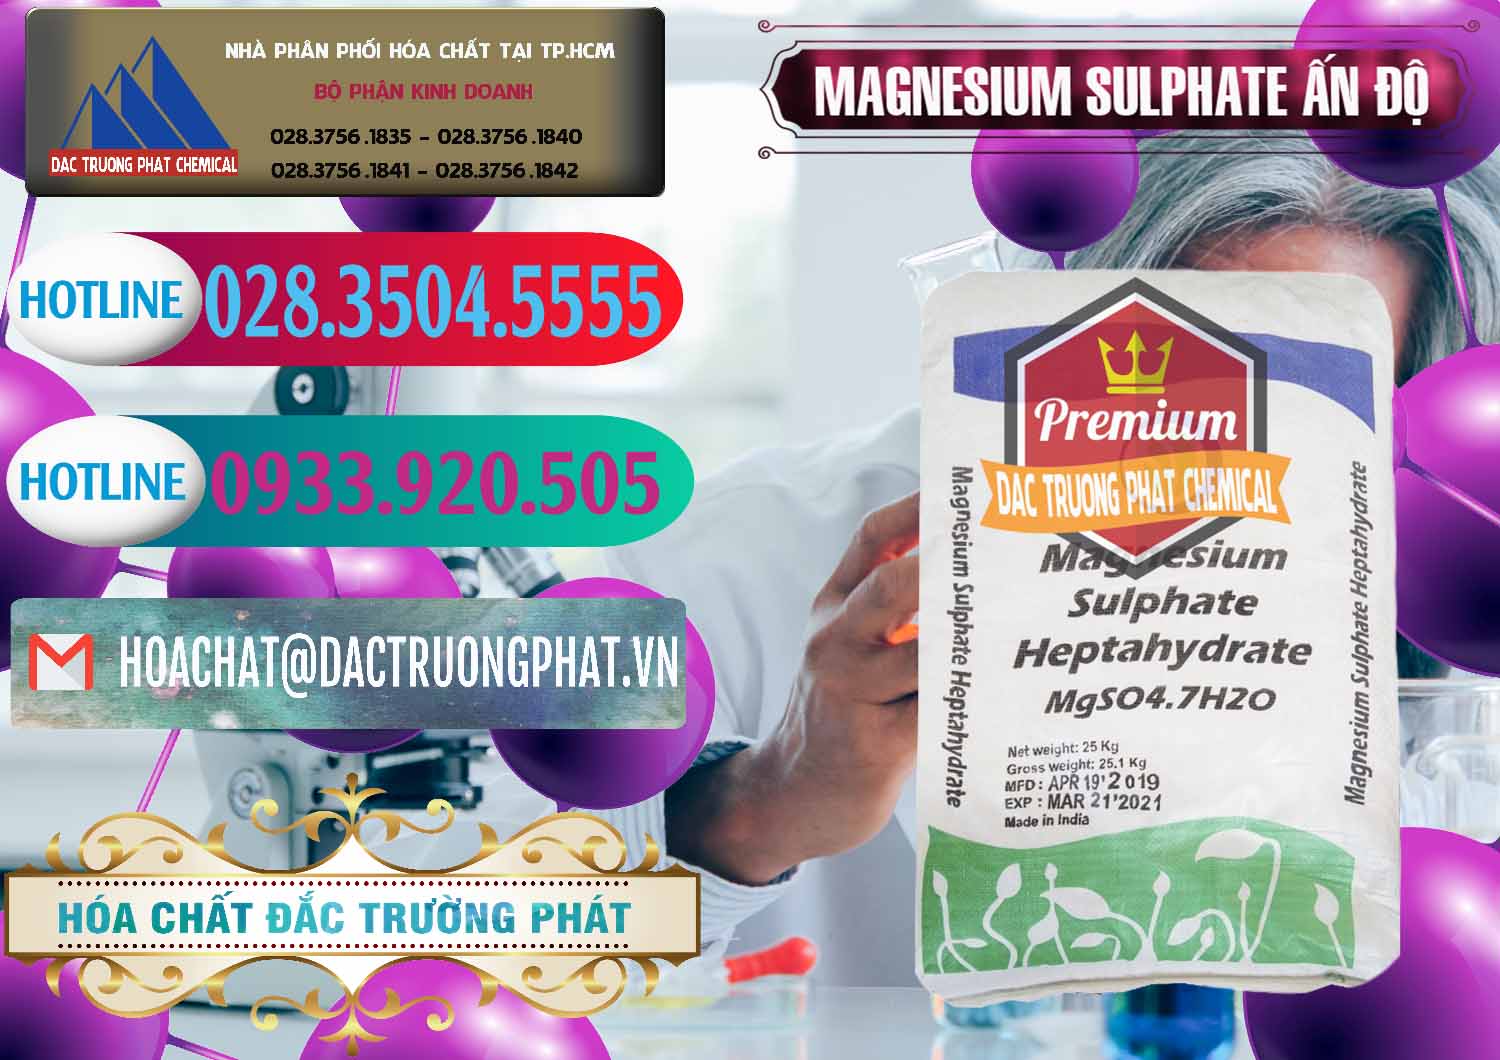 Chuyên cung ứng và bán MGSO4.7H2O – Magnesium Sulphate Heptahydrate Ấn Độ India - 0362 - Công ty cung cấp - phân phối hóa chất tại TP.HCM - truongphat.vn